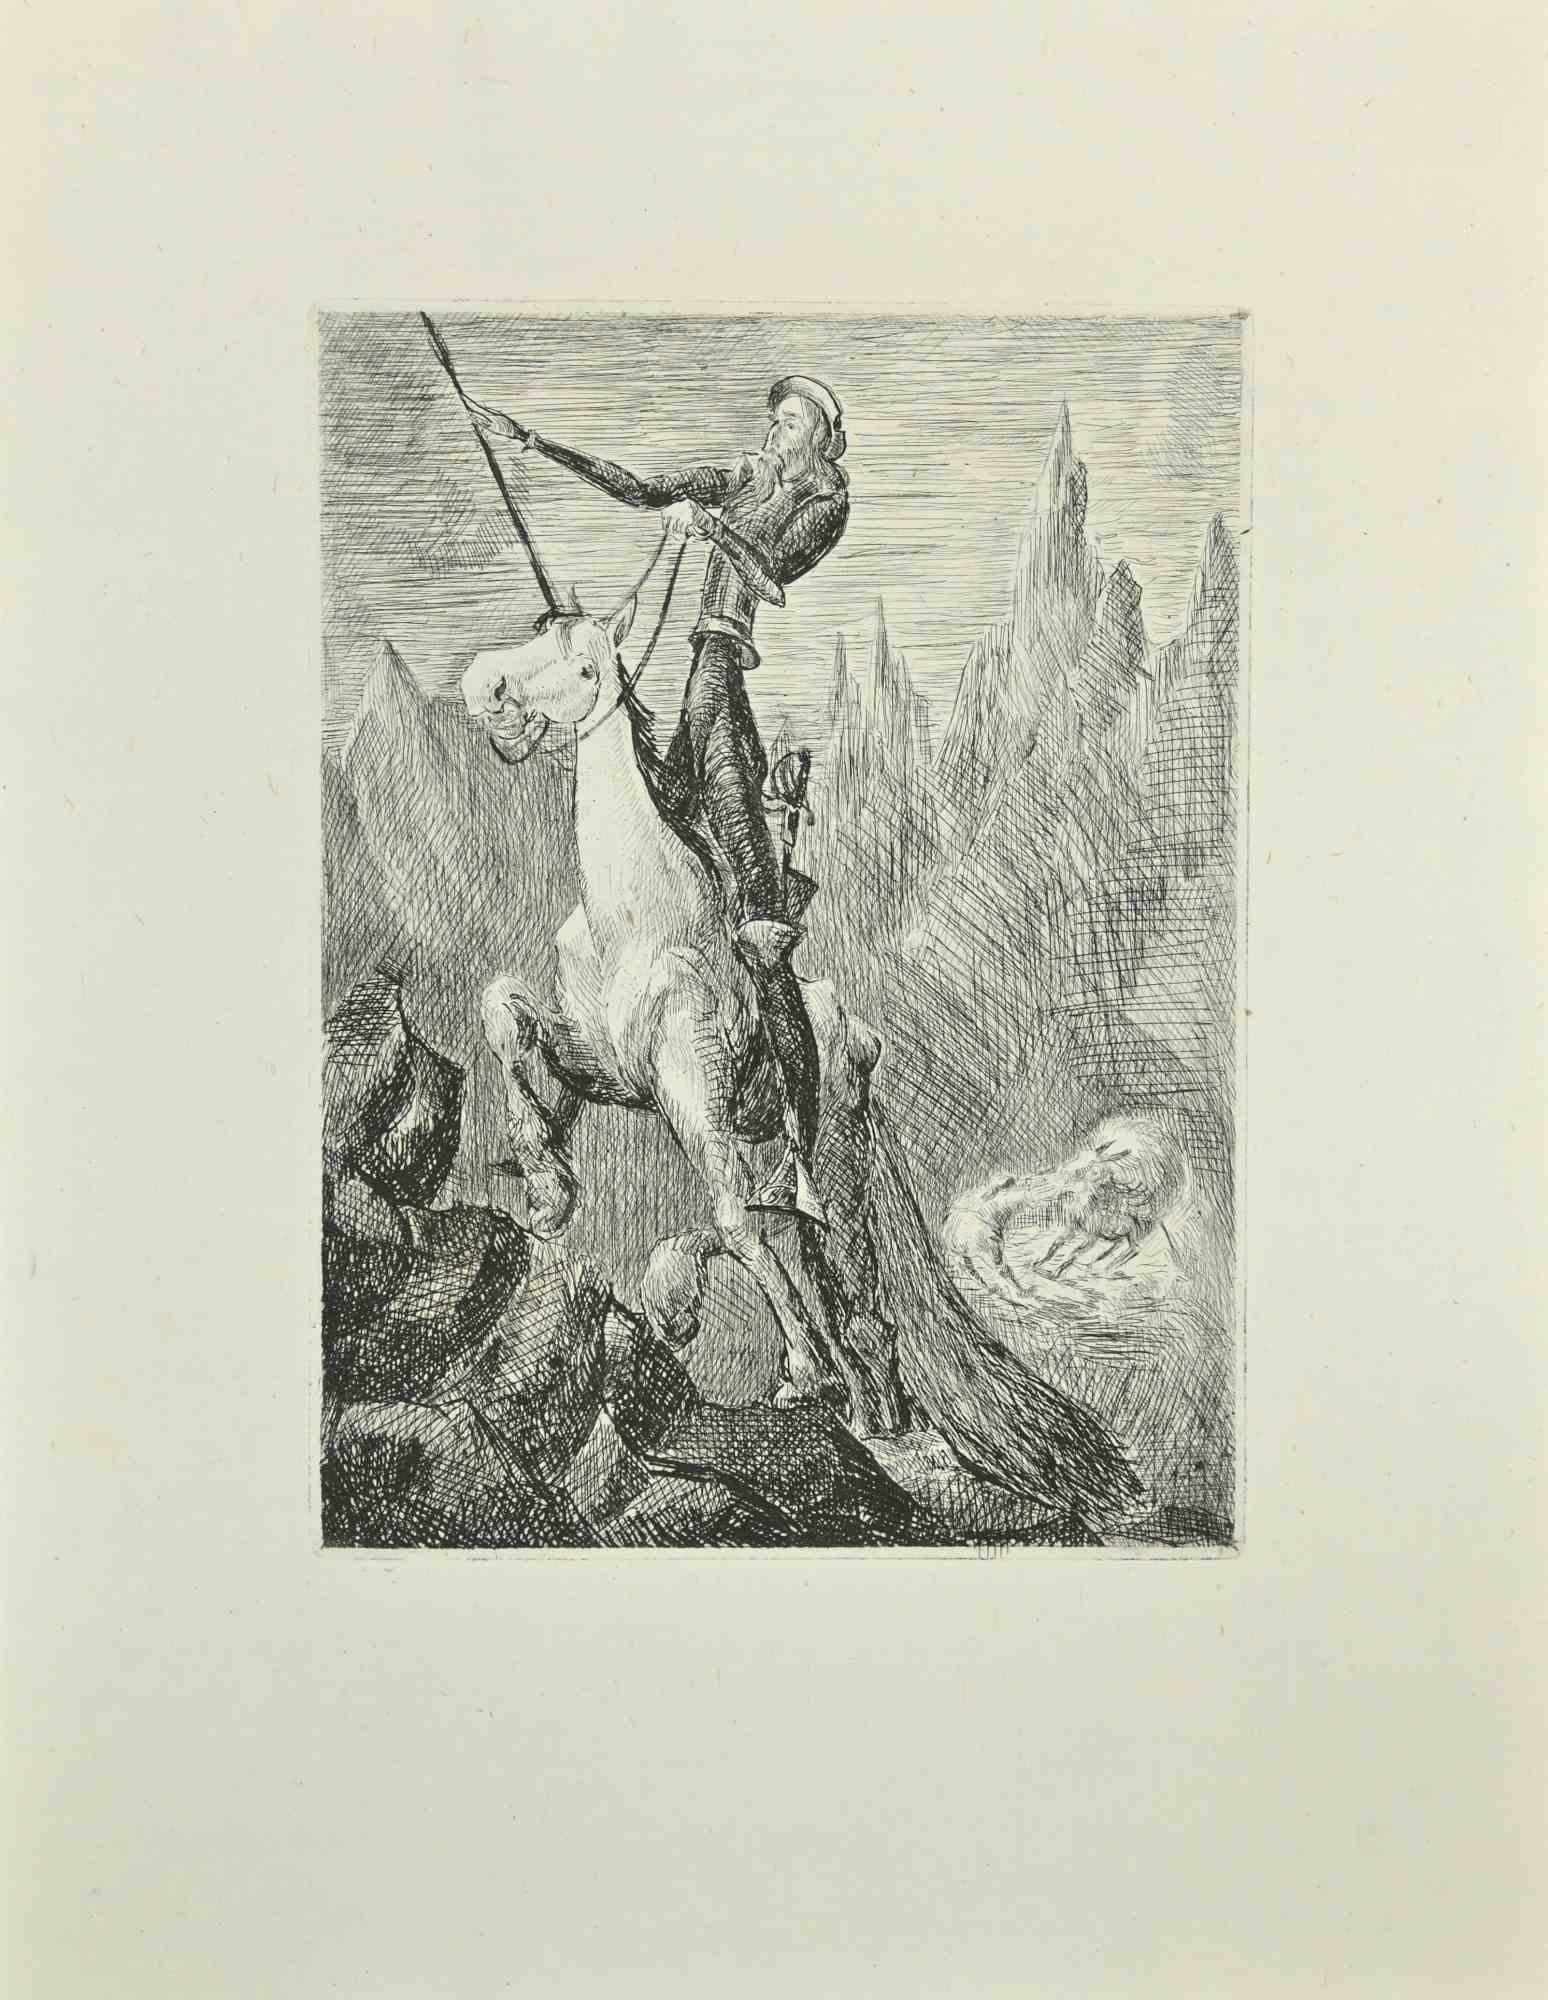 Don Quijote ist eine Radierung und Kaltnadelradierung auf elfenbeinfarbenem Chinapapier, die 1951 von Wladyslaw Jahl realisiert wurde.

Das Kunstwerk gehört zu einer limitierten Auflage von 125 Exemplaren.

Gute Bedingungen.

Das Kunstwerk stellt